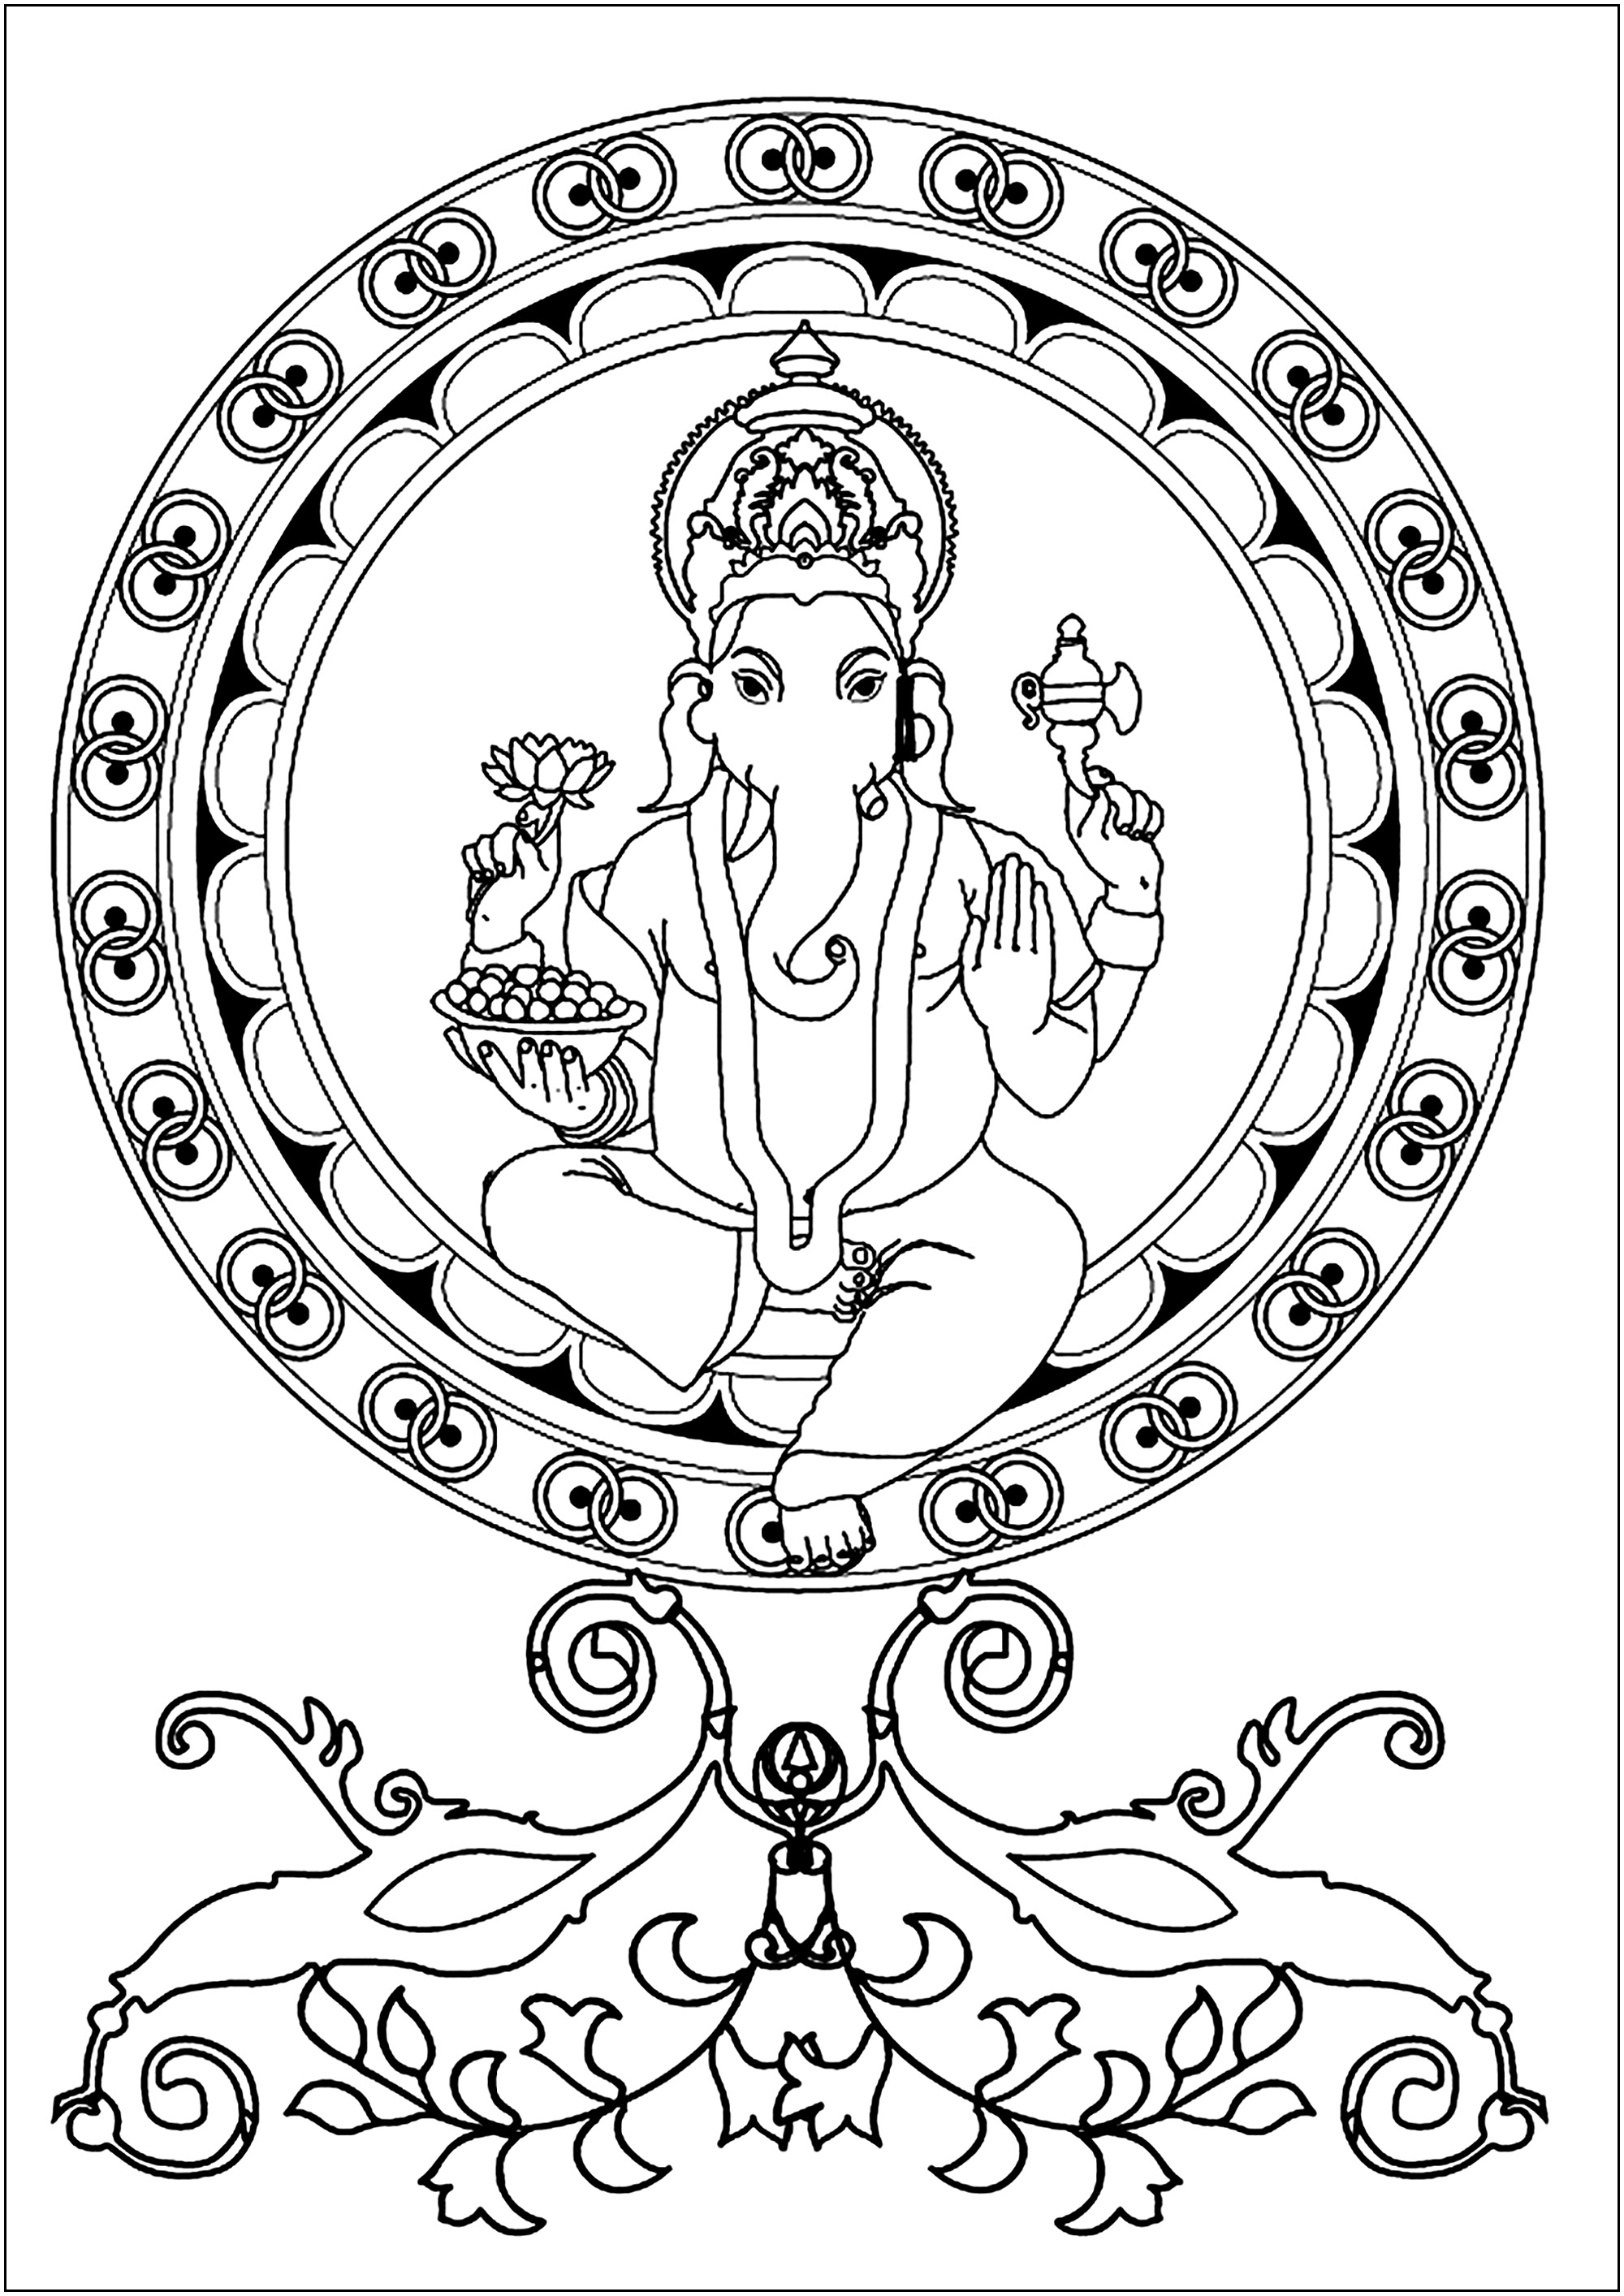 Ganesh en el centro de un mandala. Ganesh es una deidad hindú muy venerada como dios de la sabiduría, la inteligencia y la prosperidad.Representado con cabeza de elefante y cuerpo humano, se le suele honrar al comienzo de rituales y ceremonias para eliminar obstáculos (Vighna) y atraer el éxito.